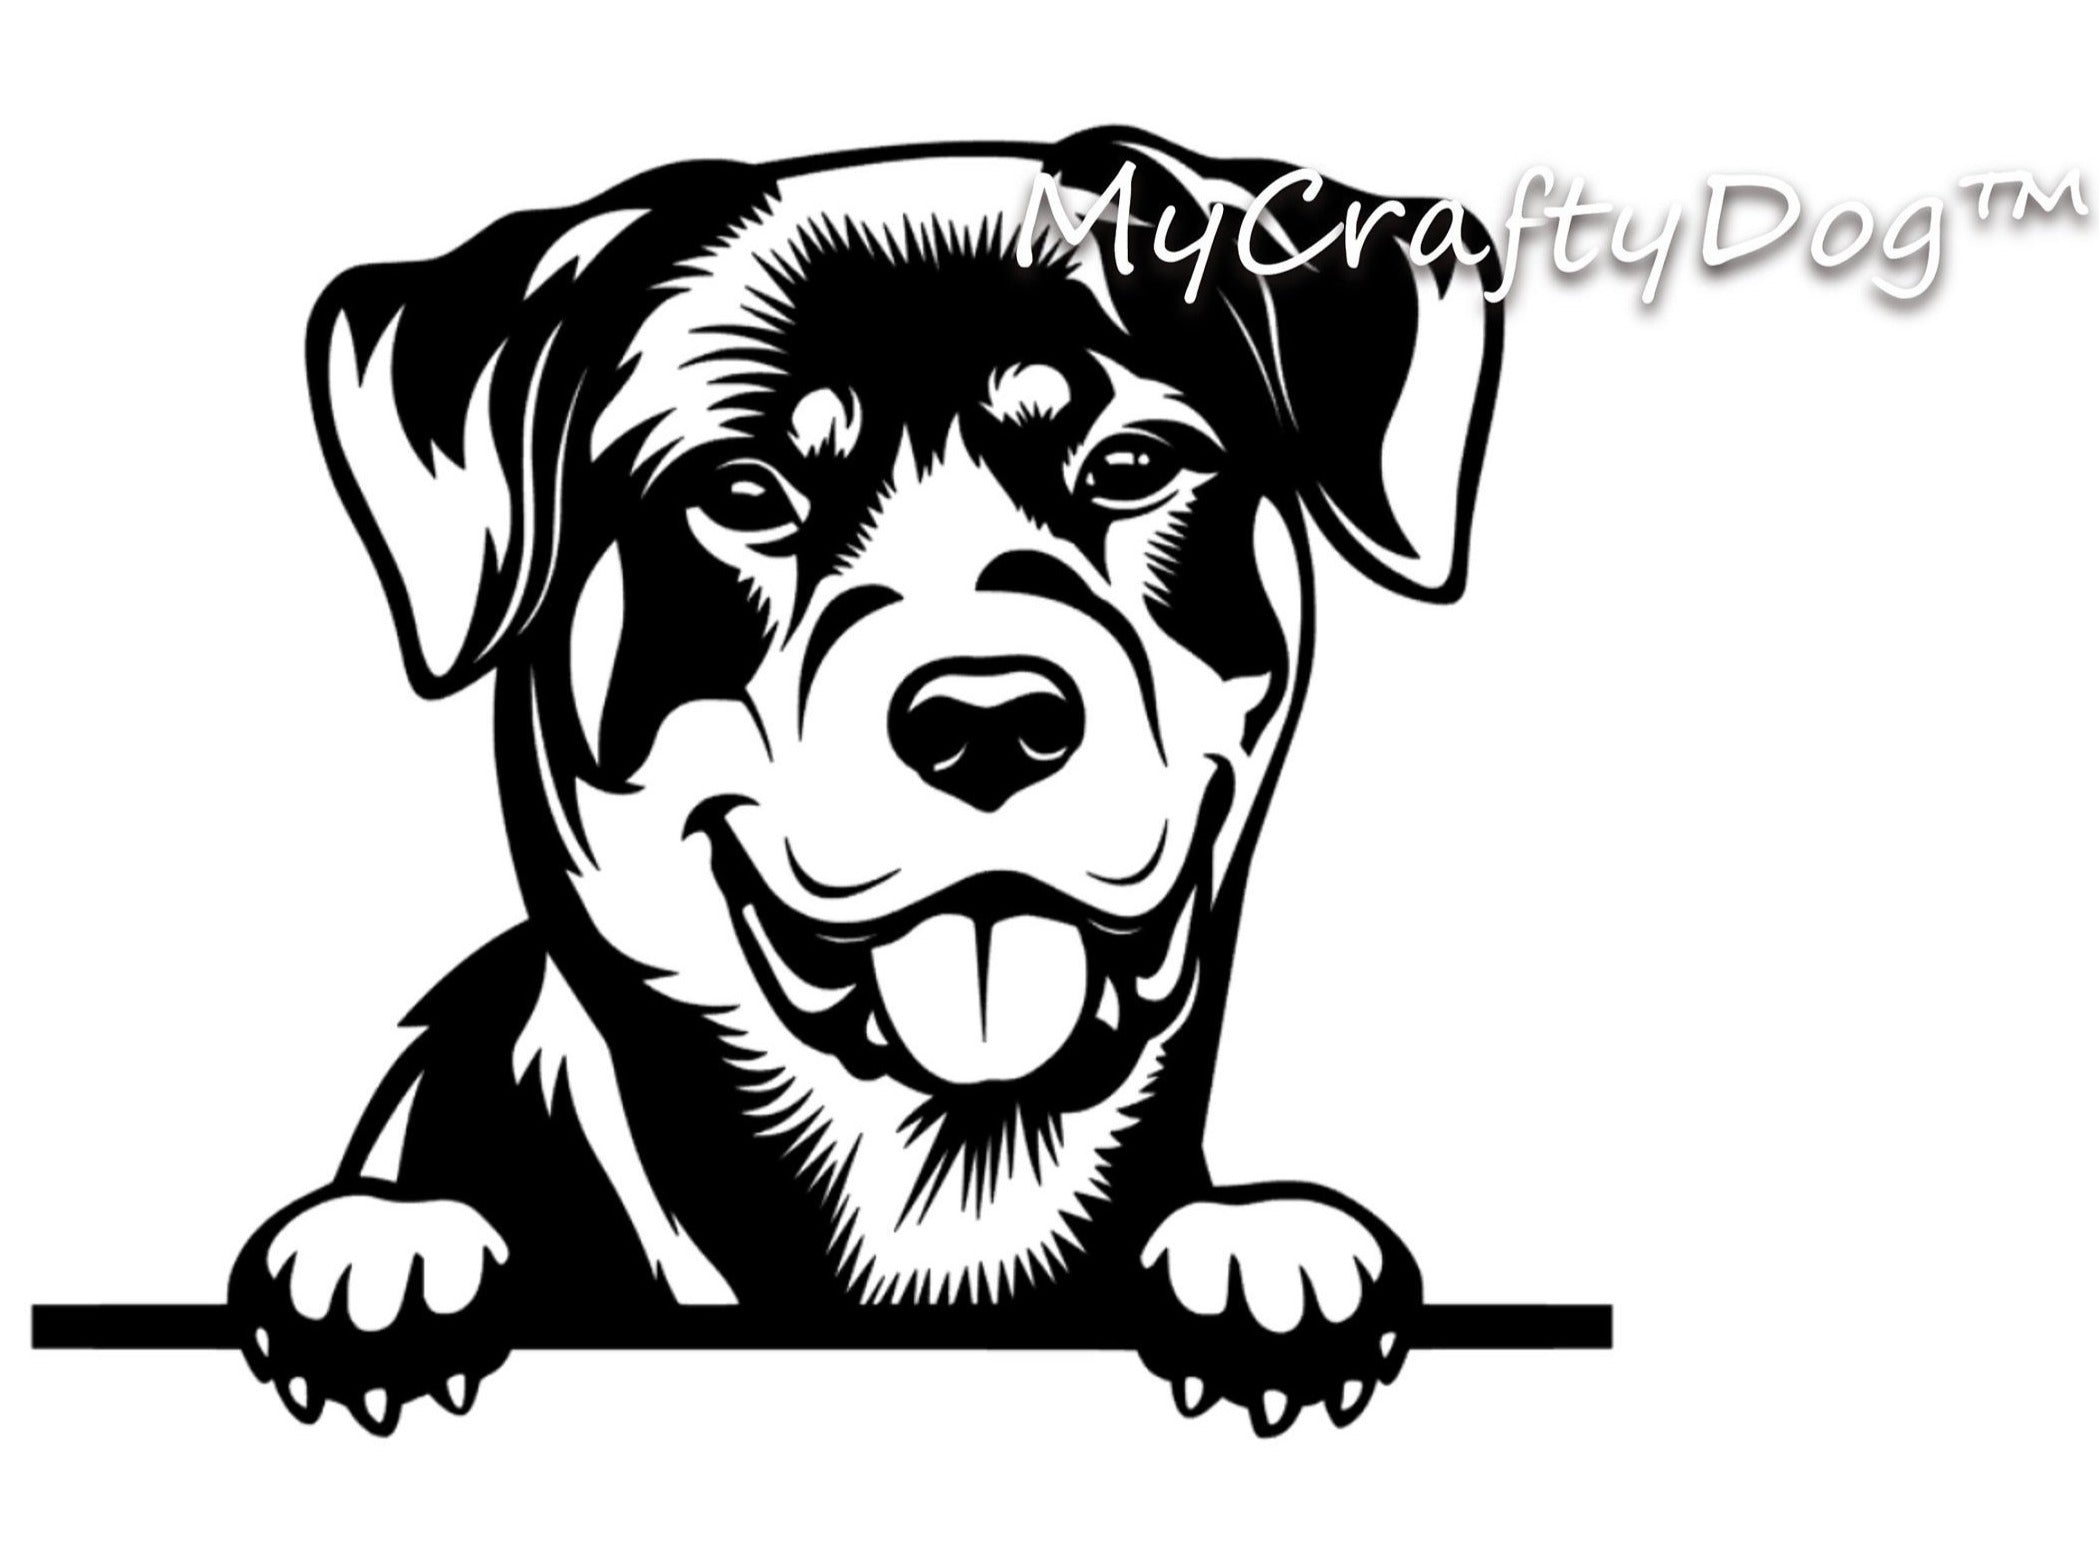 Peeking Rottweiler Car Sticker - My Crafty Dog